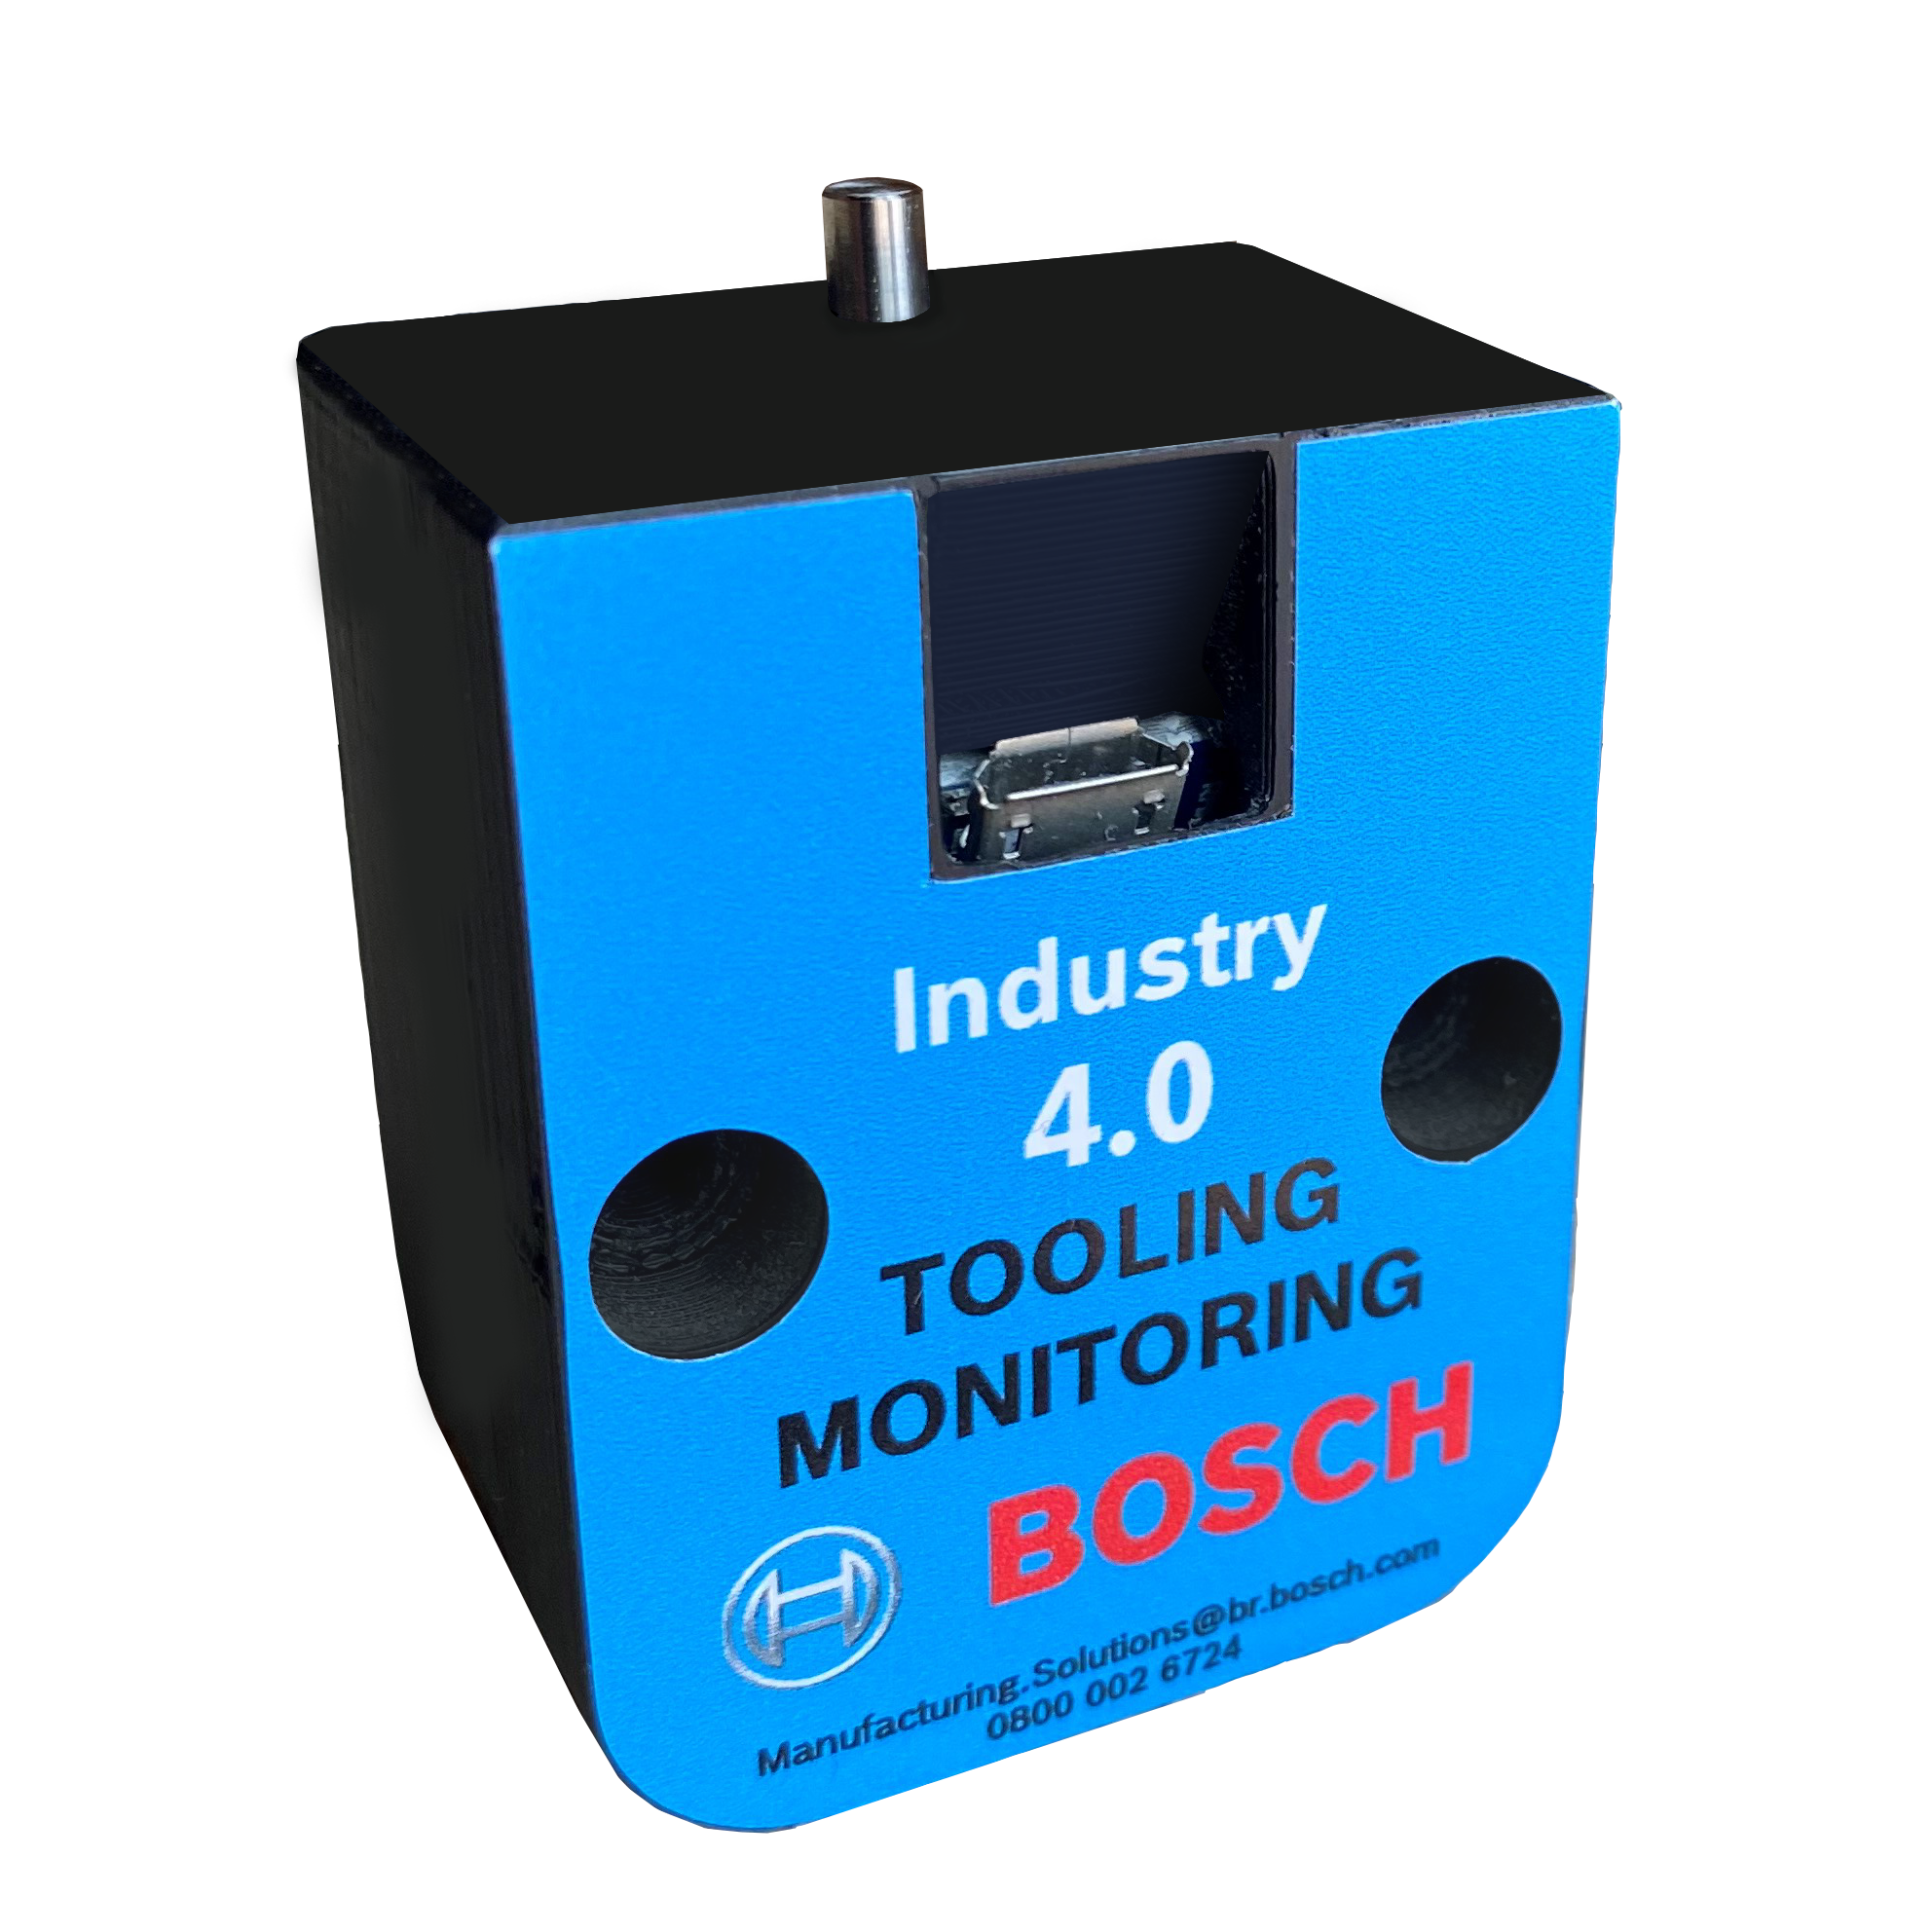 O Tooling Monitoring possibilita a digitalização de moldes de injeção de plásticos e estampos, favorecendo o gerenciamento de produção, manutenção e de ativos. 